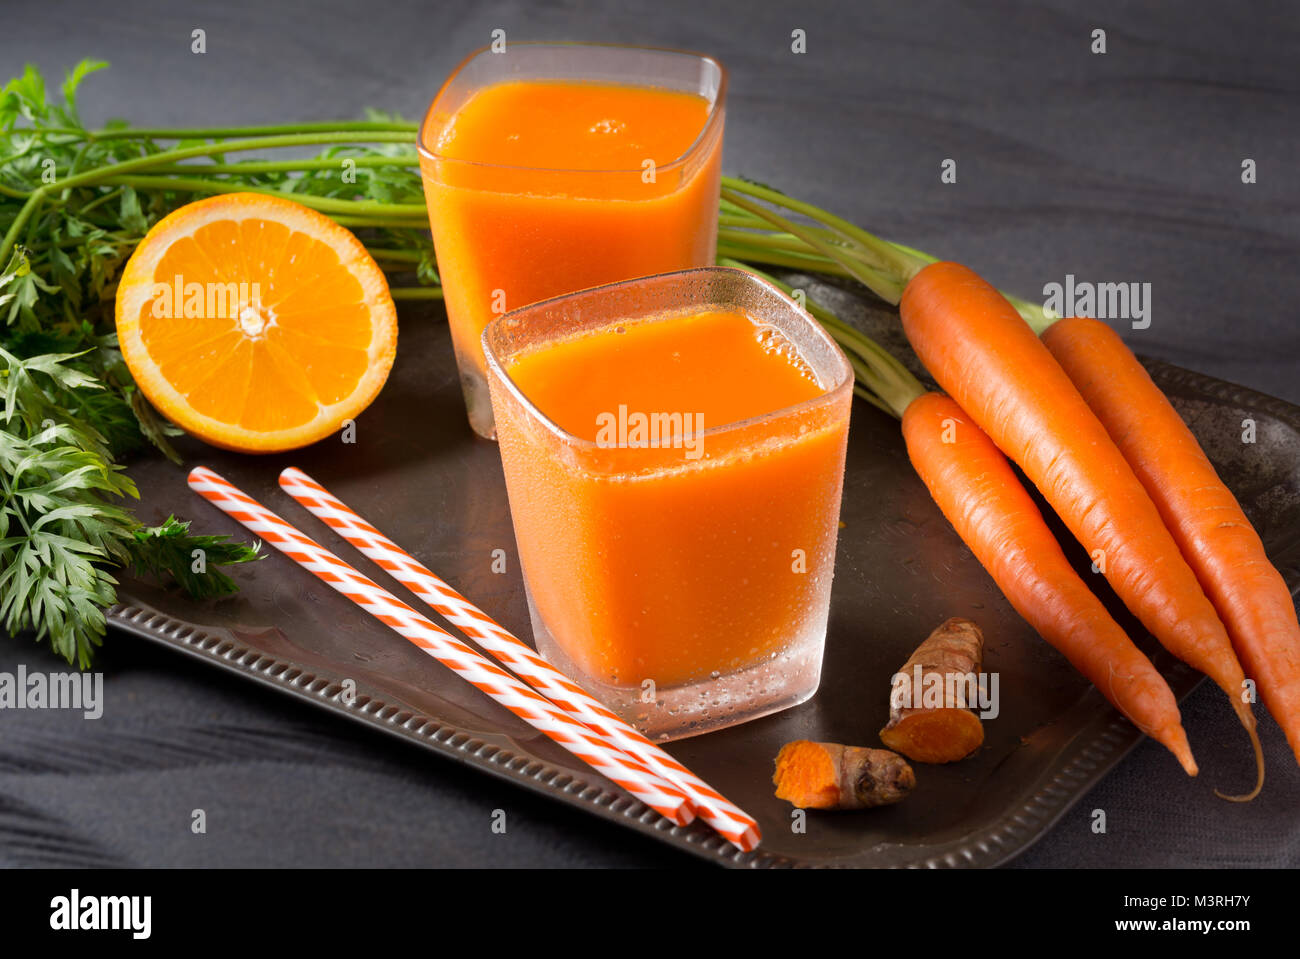 Deux verres de jus d'orange-carotte fraîche avec de la racine de curcuma Banque D'Images